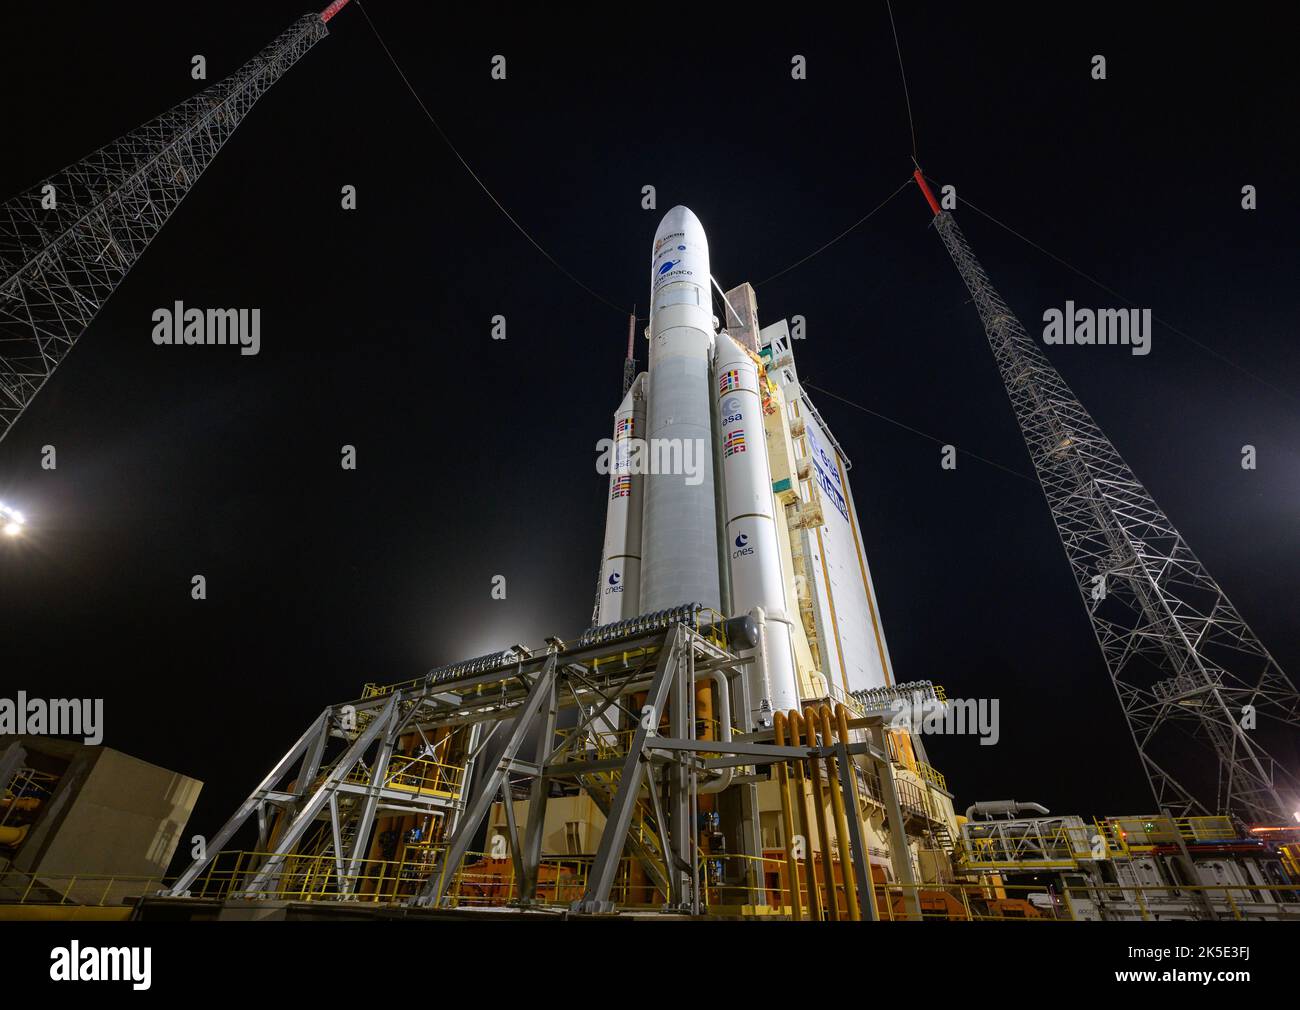 Die Ariane 5-Rakete von Arianespace mit dem James Webb Space Telescope (JWST) der NASA an Bord wird am 23. Dezember 2021 auf der Startrampe im europäischen Weltraumbahnhof, dem Weltraumzentrum Guayana in Kourou, Französisch-Guayana, gesehen. Das JWST (manchmal auch Webb genannt) ist ein großes Infrarotteleskop mit einem Primärspiegel von 21,3 Fuß (6,5 Meter). Das Observatorium wird jede Phase der kosmischen historyÑfrom innerhalb unseres Sonnensystems bis zu den entferntesten beobachtbaren Galaxien im frühen Universum untersuchen. Eine einzigartige, digital optimierte Version eines NASA-Bildes vom Senior NASA-Fotografen Bill Ingalls / Credit NASA. Stockfoto